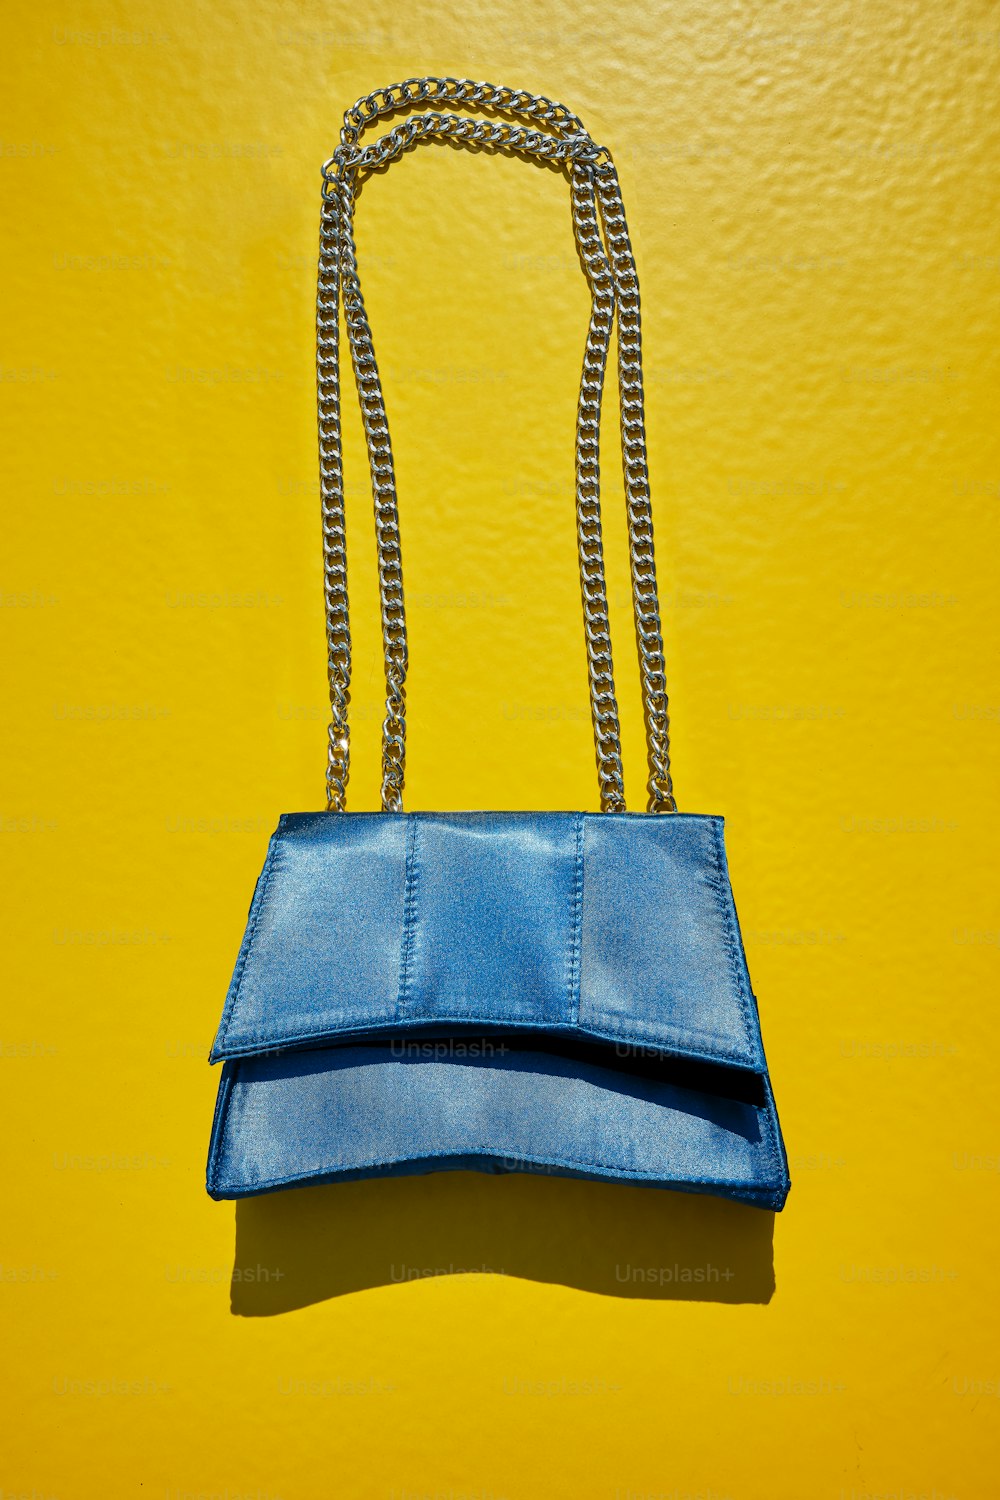 una borsa blu appesa a un muro giallo